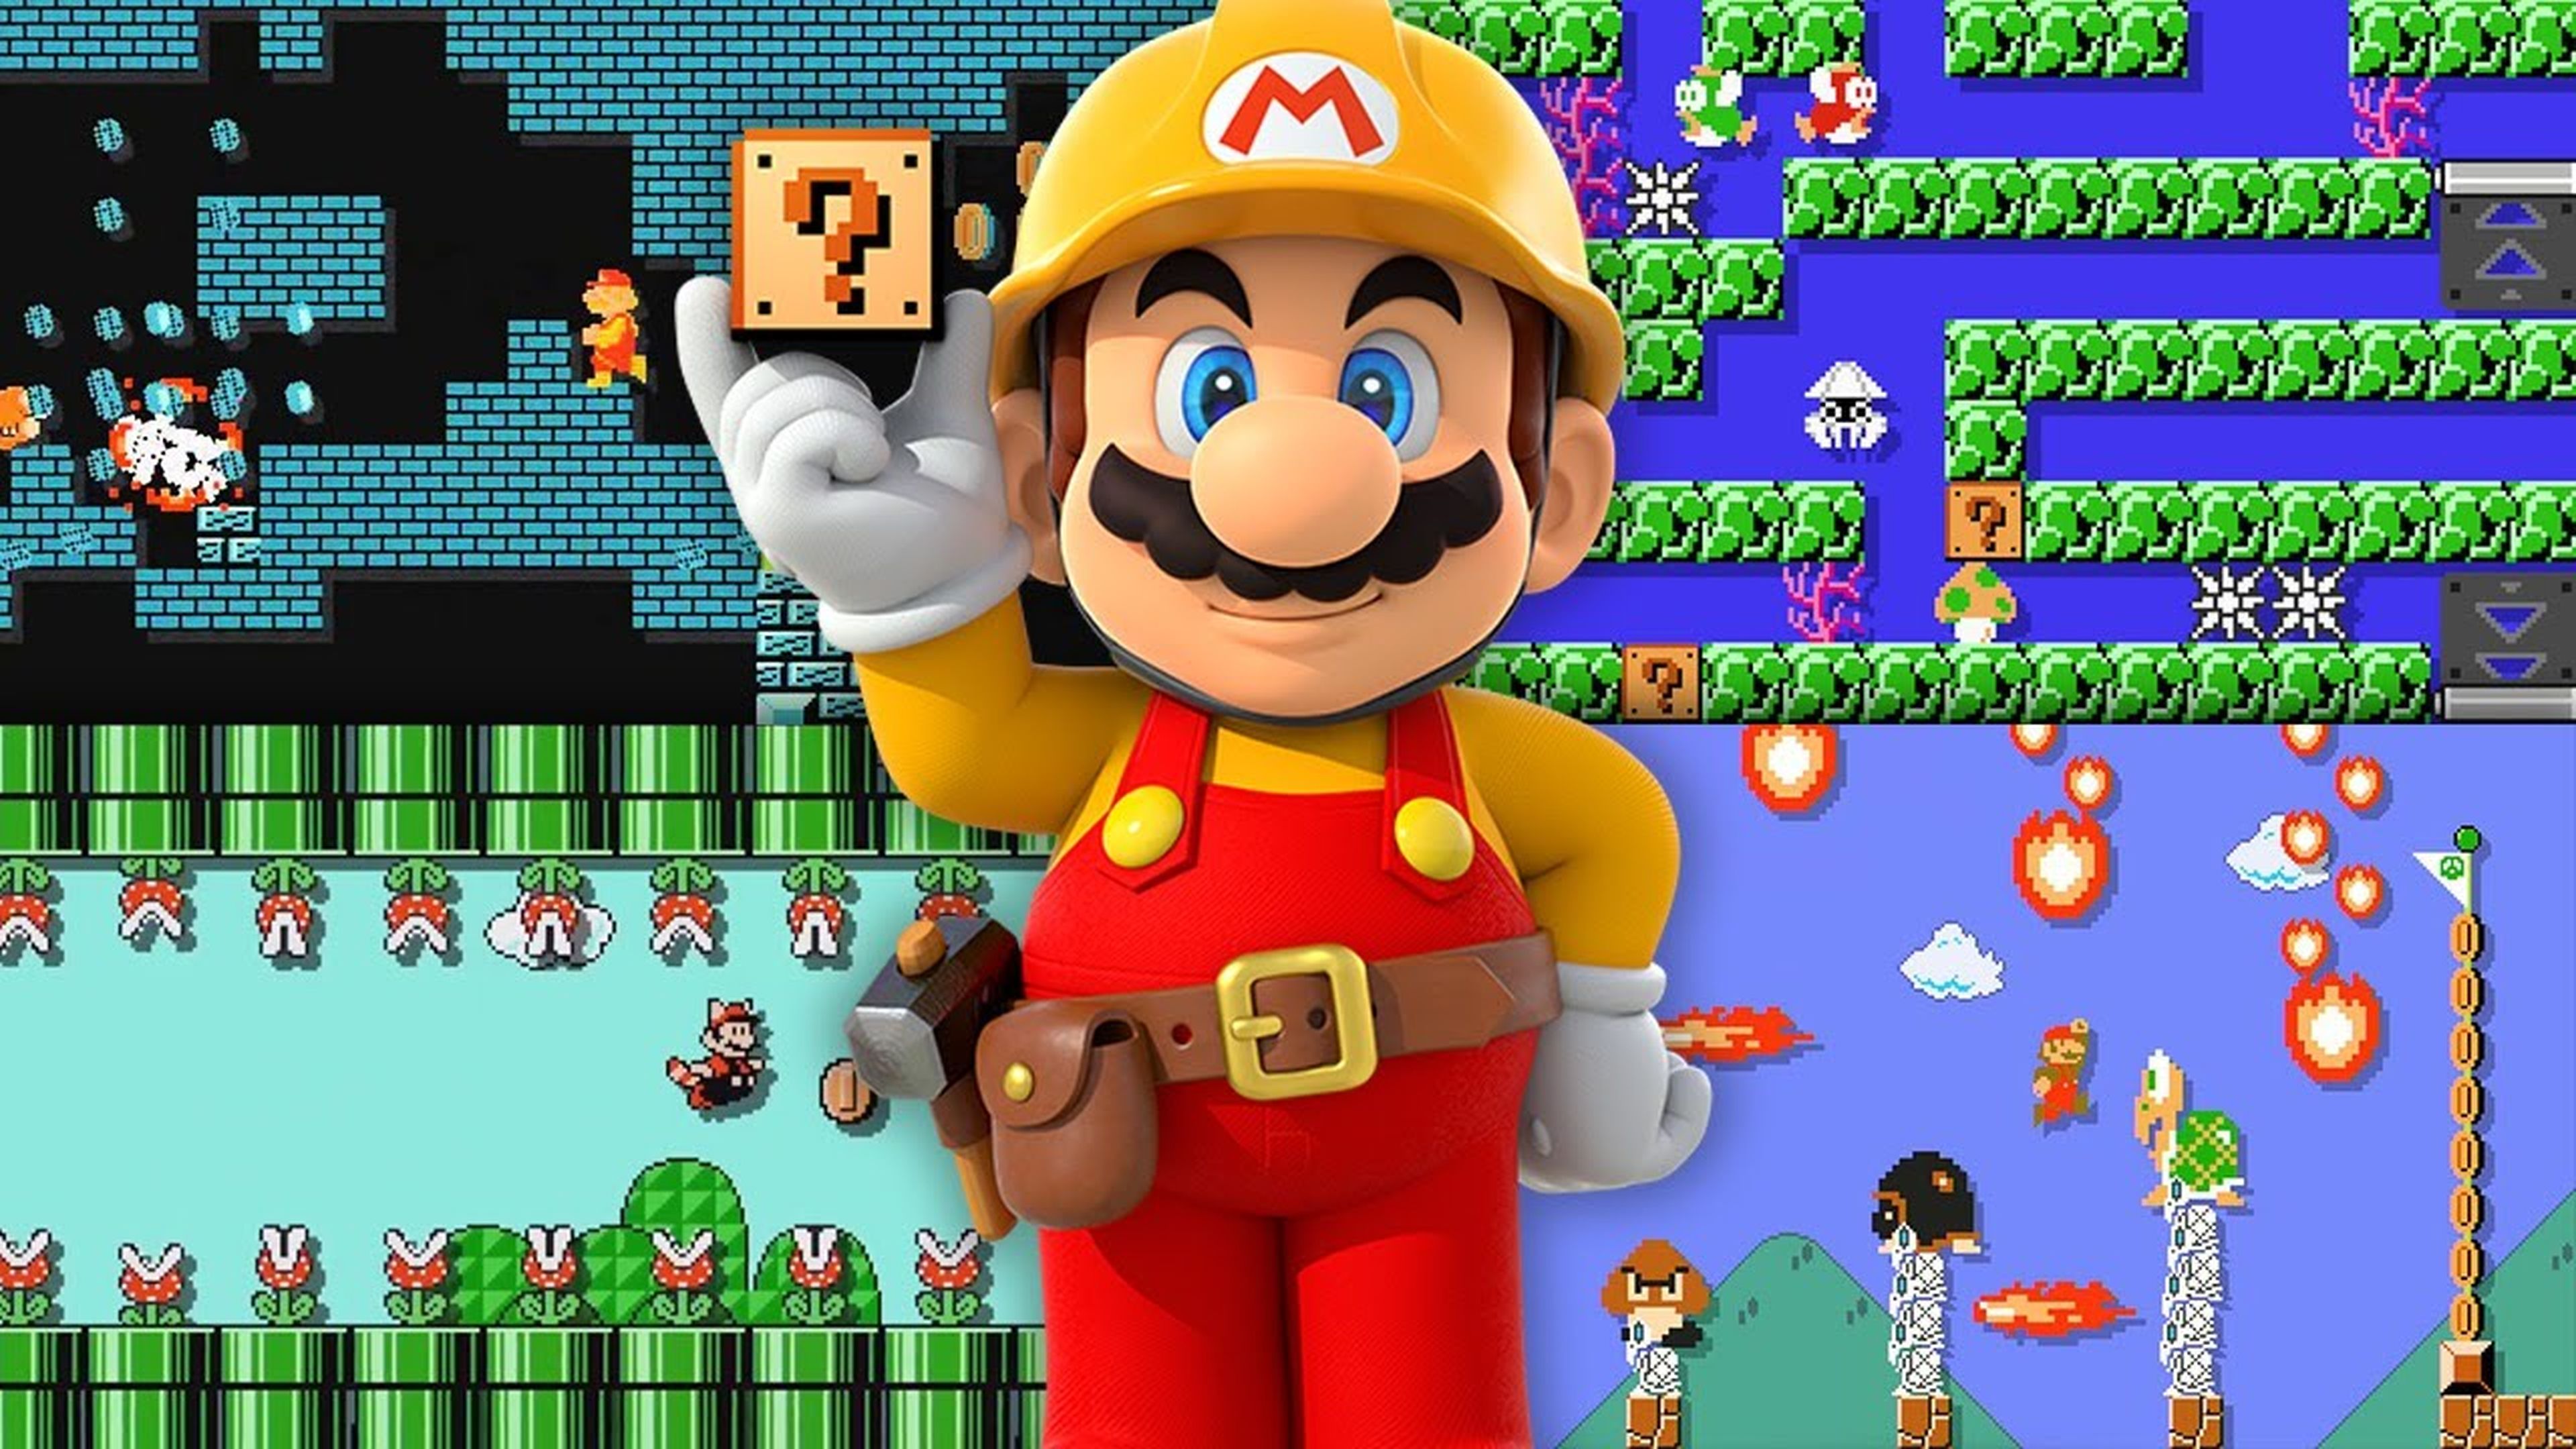 9. Super Mario Maker